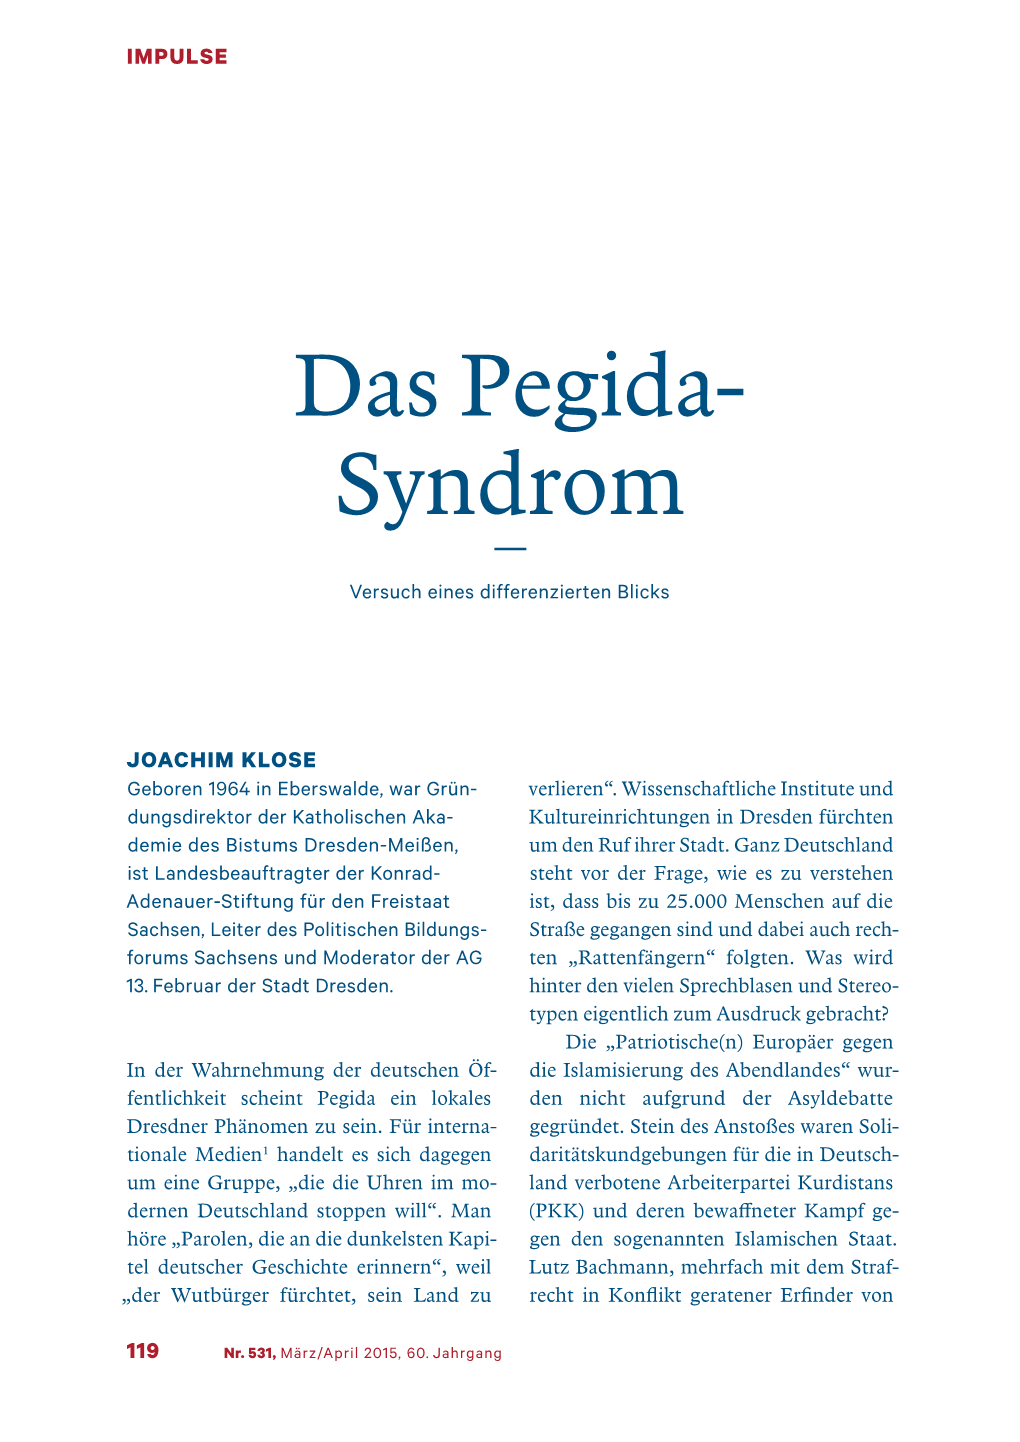 Das Pegida-Syndrom, Joachim Klose